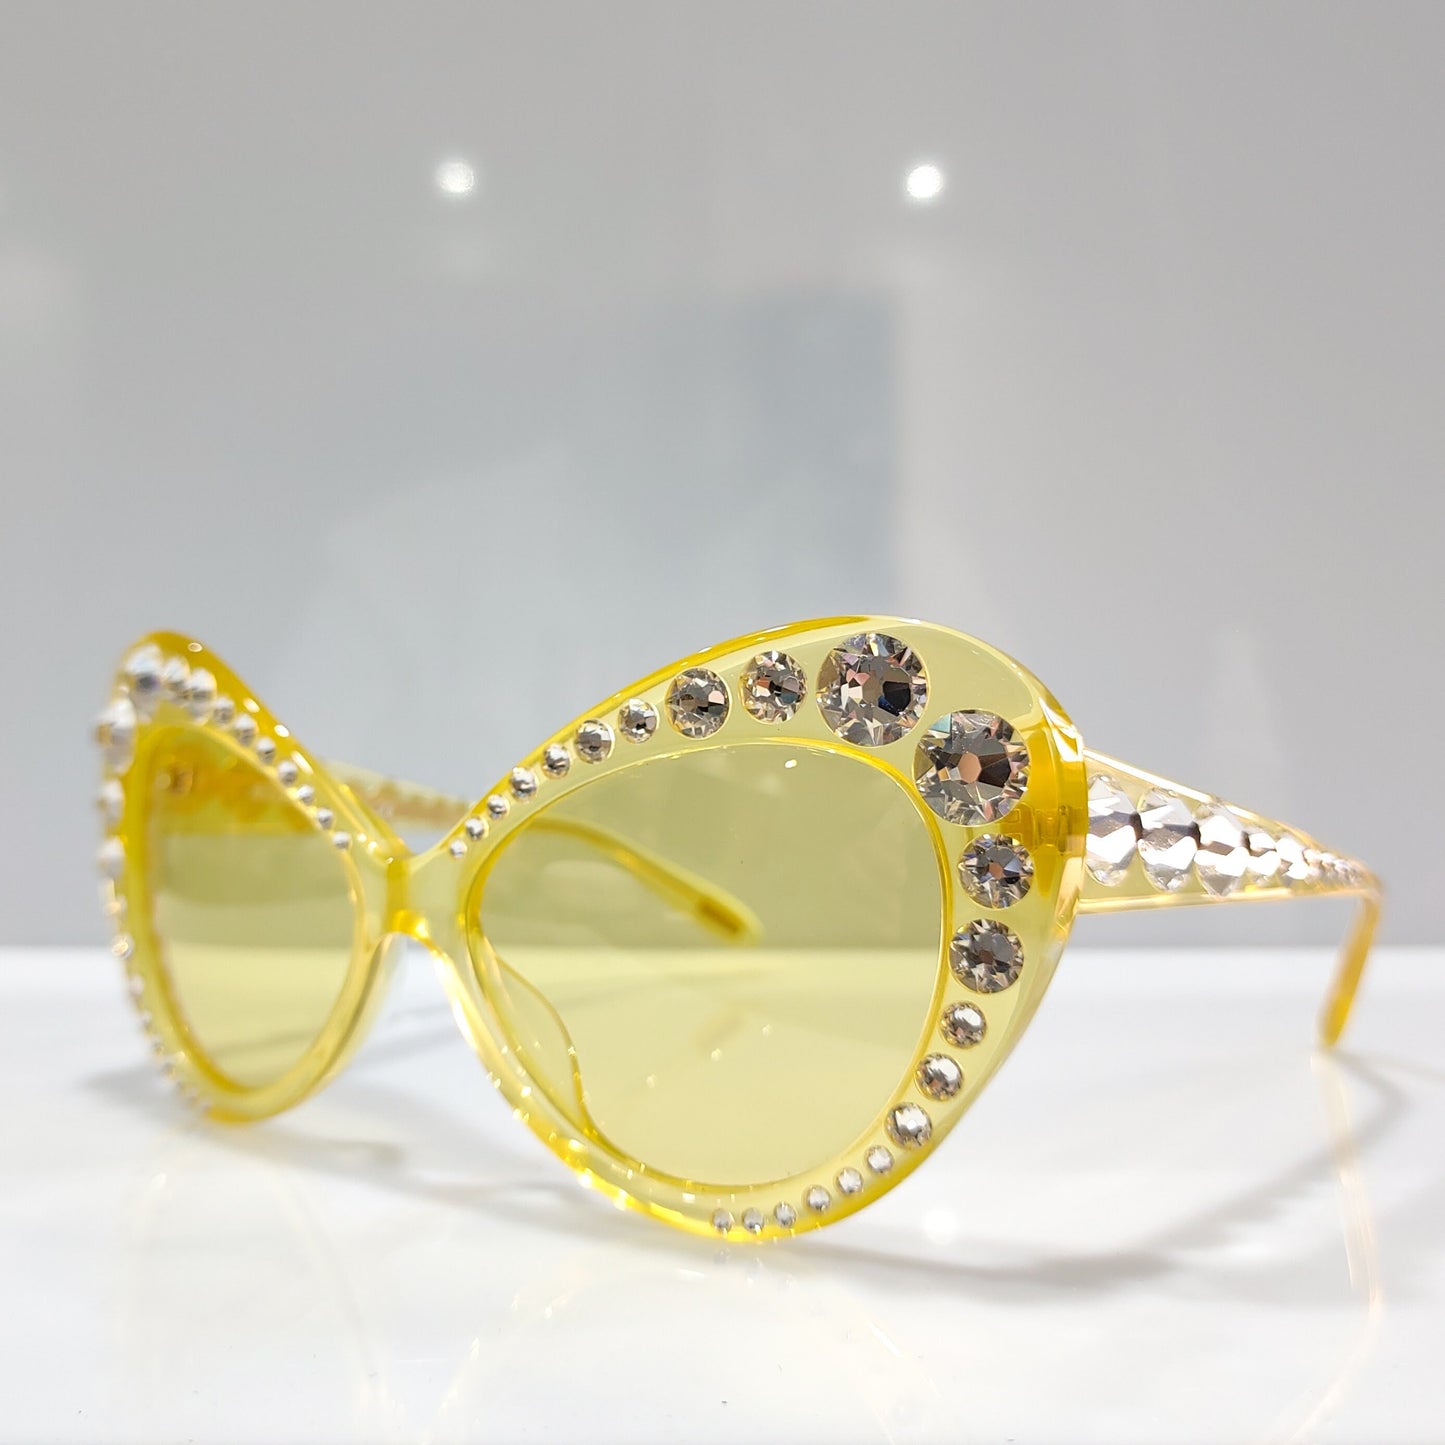 Moschino MO796S occhiali da sole vintage occhiali gafas Y2k farfalla oversize